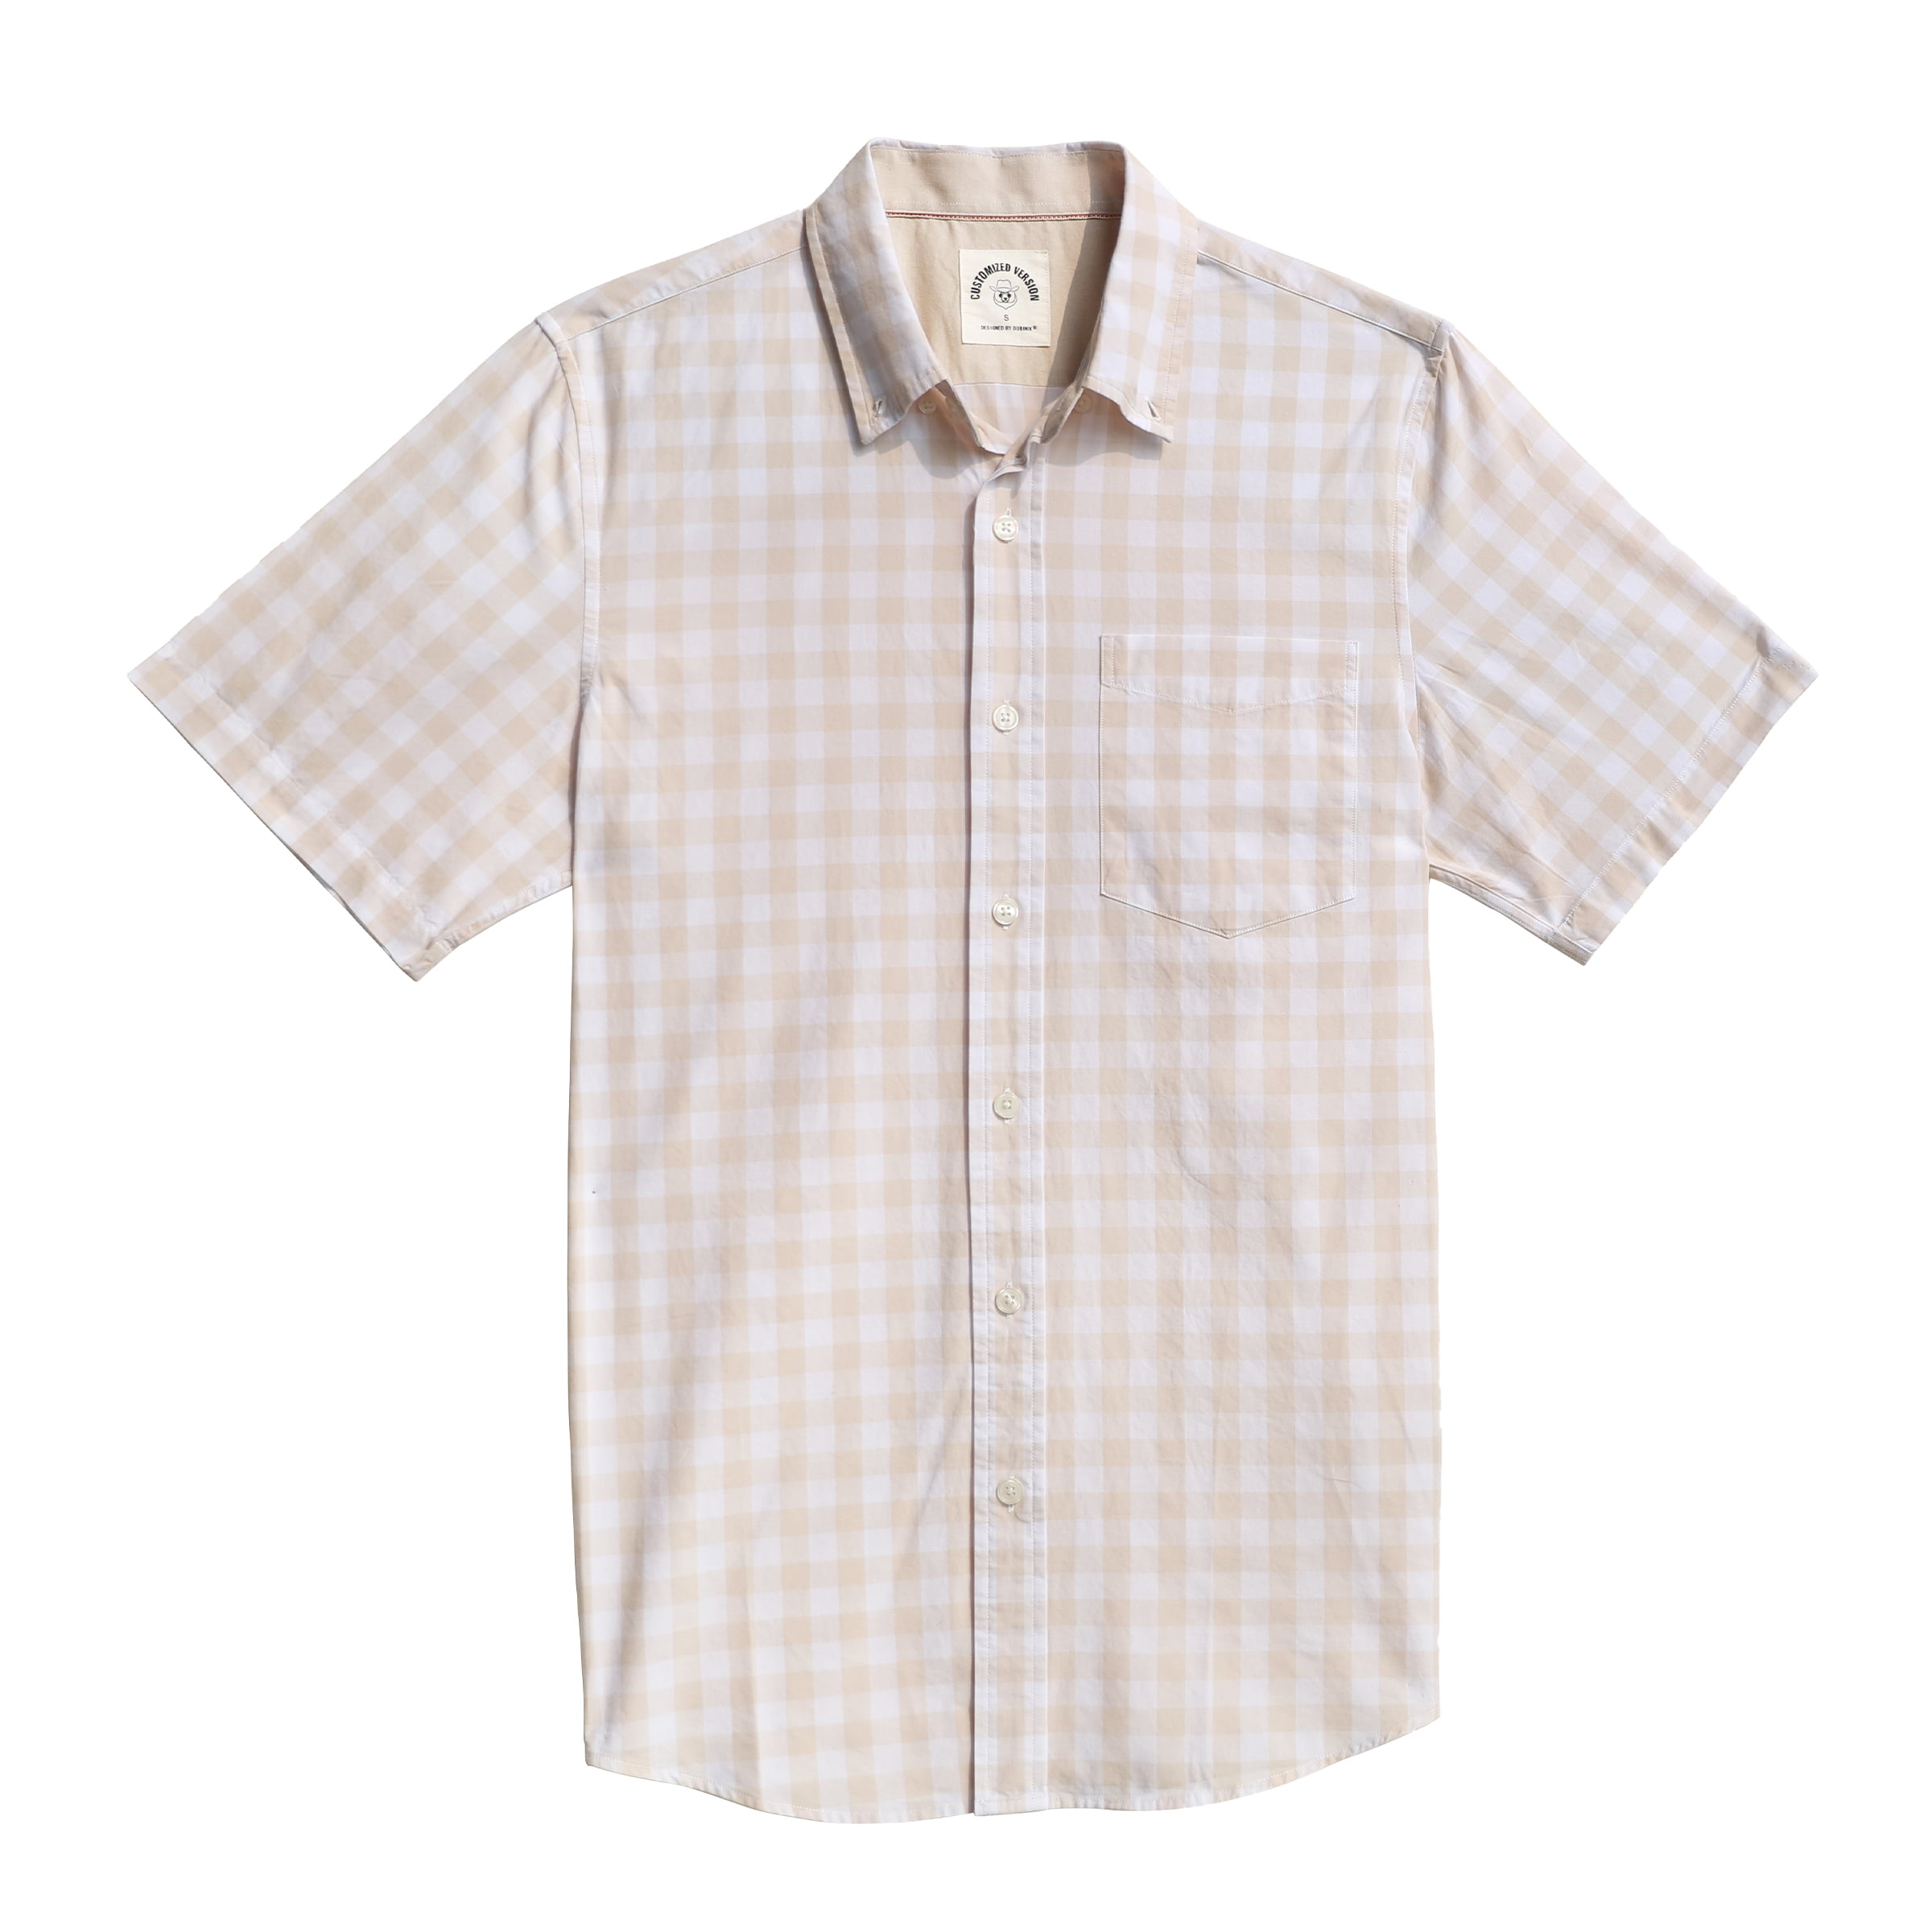 Dubinik Mens Short Sleeve Button Down Shirts 100% Cotton Plaid Men's ...